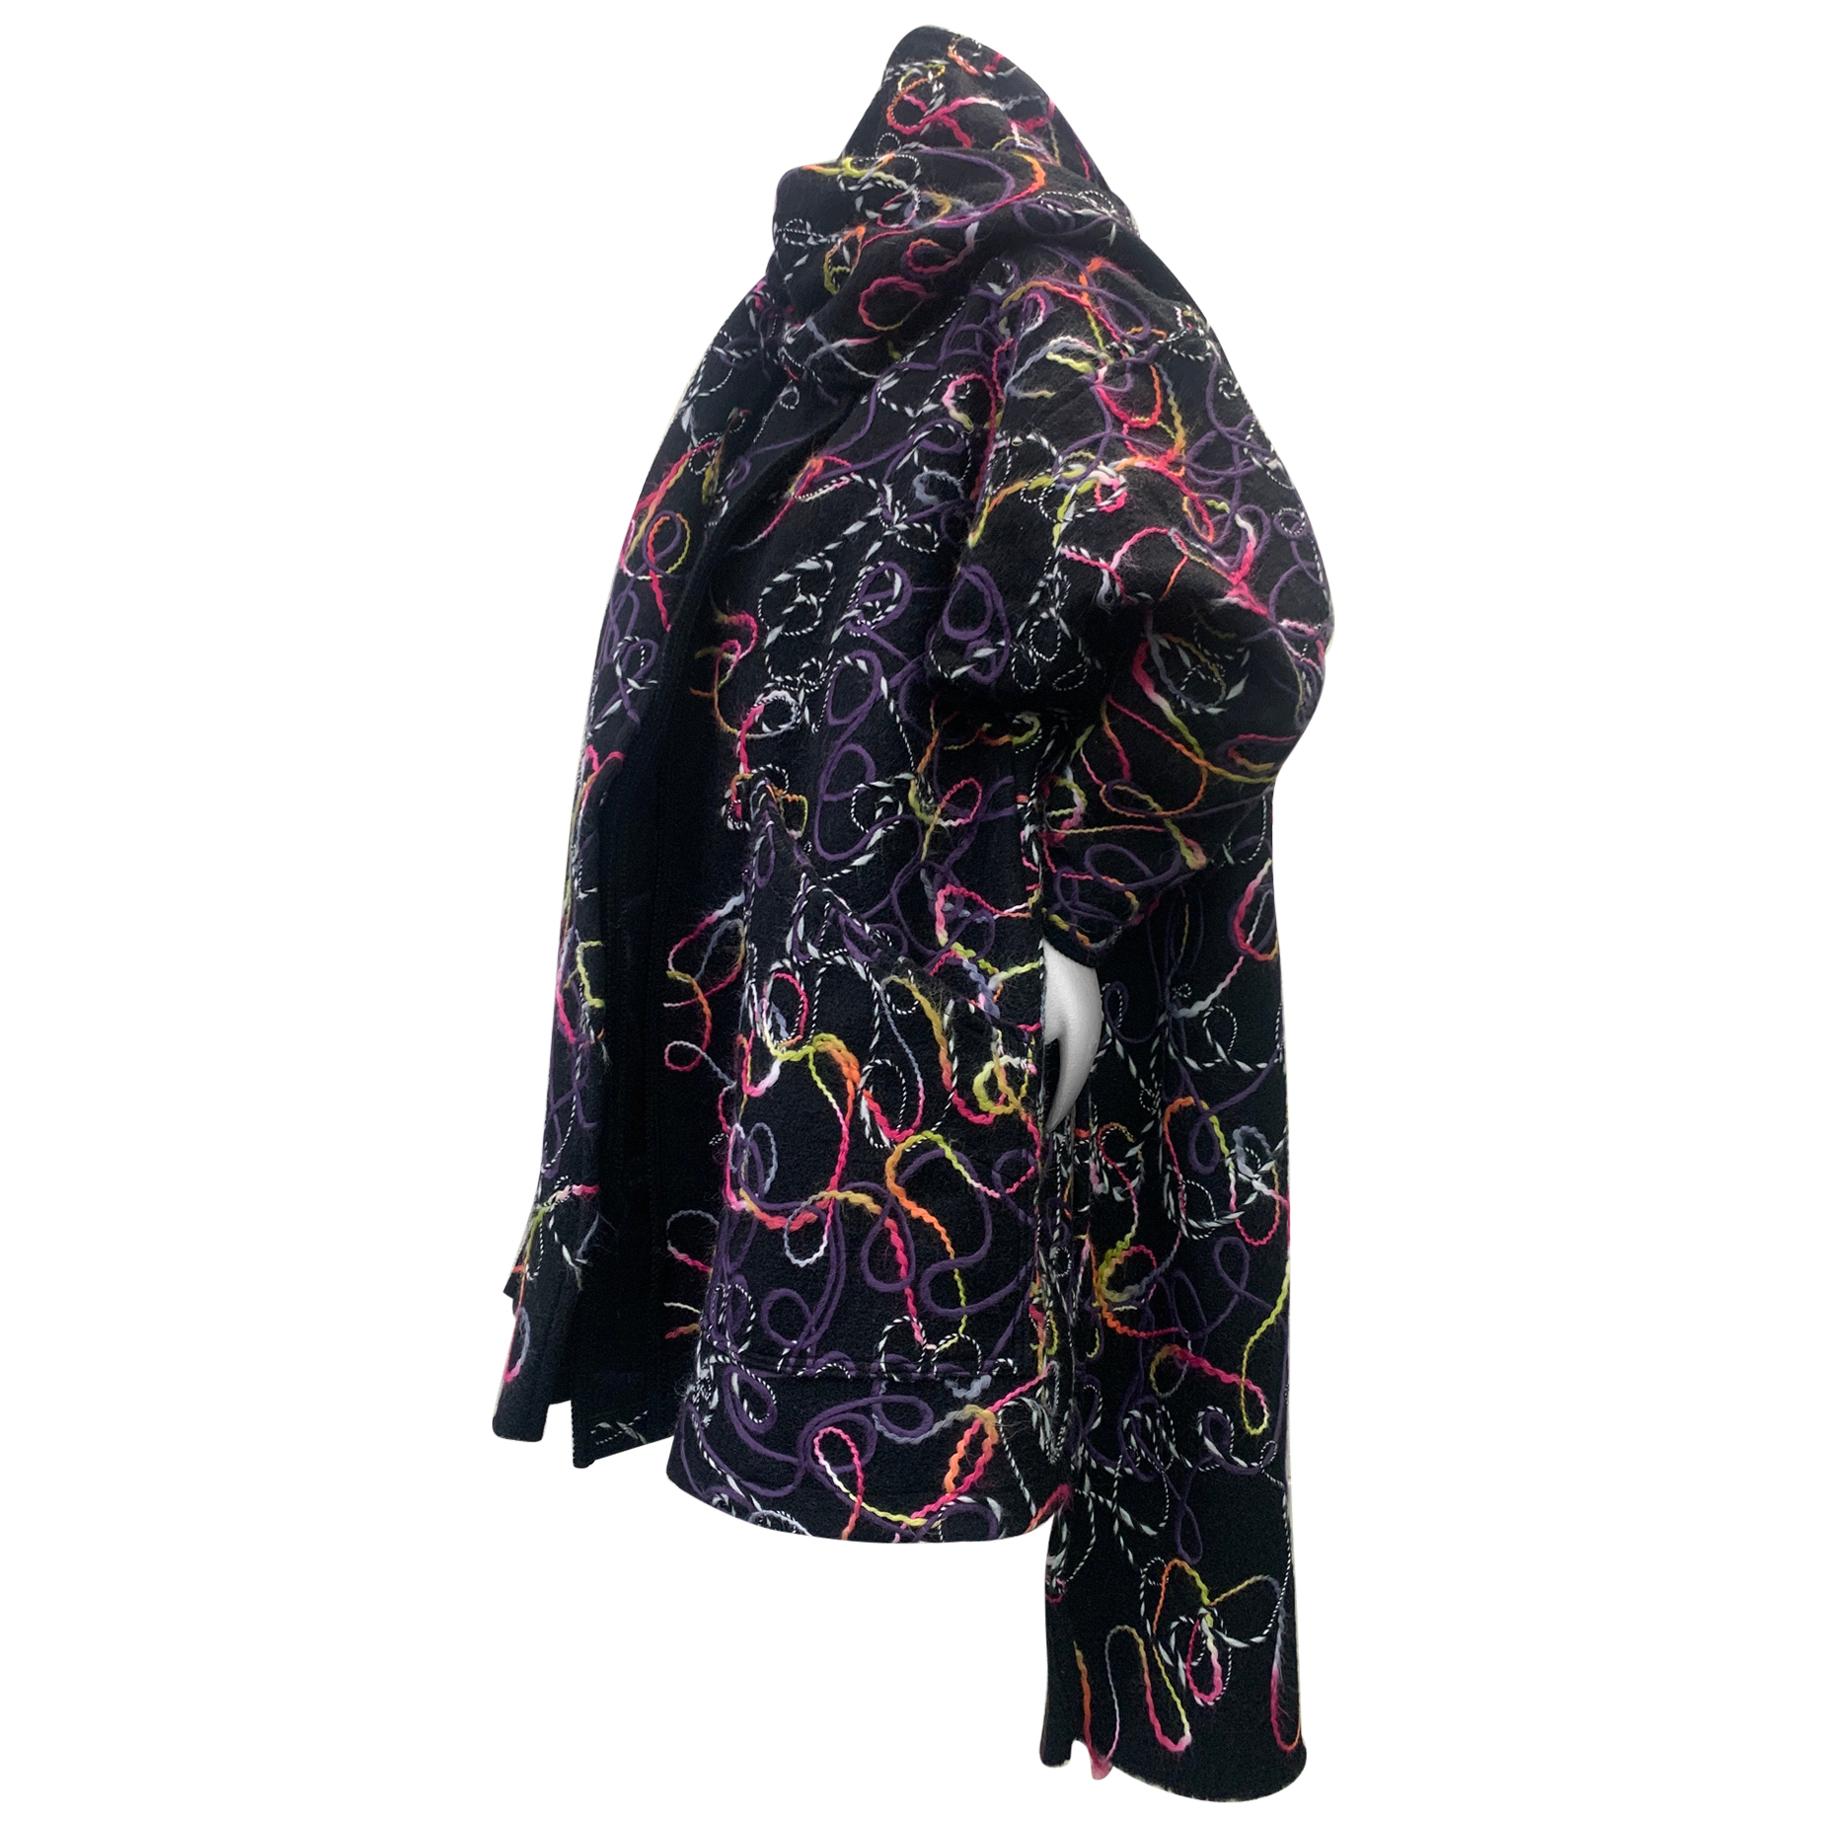 Créations de torse - Manteau surdimensionné en laine noire feutrée technique mixte avec grande foulard  en vente